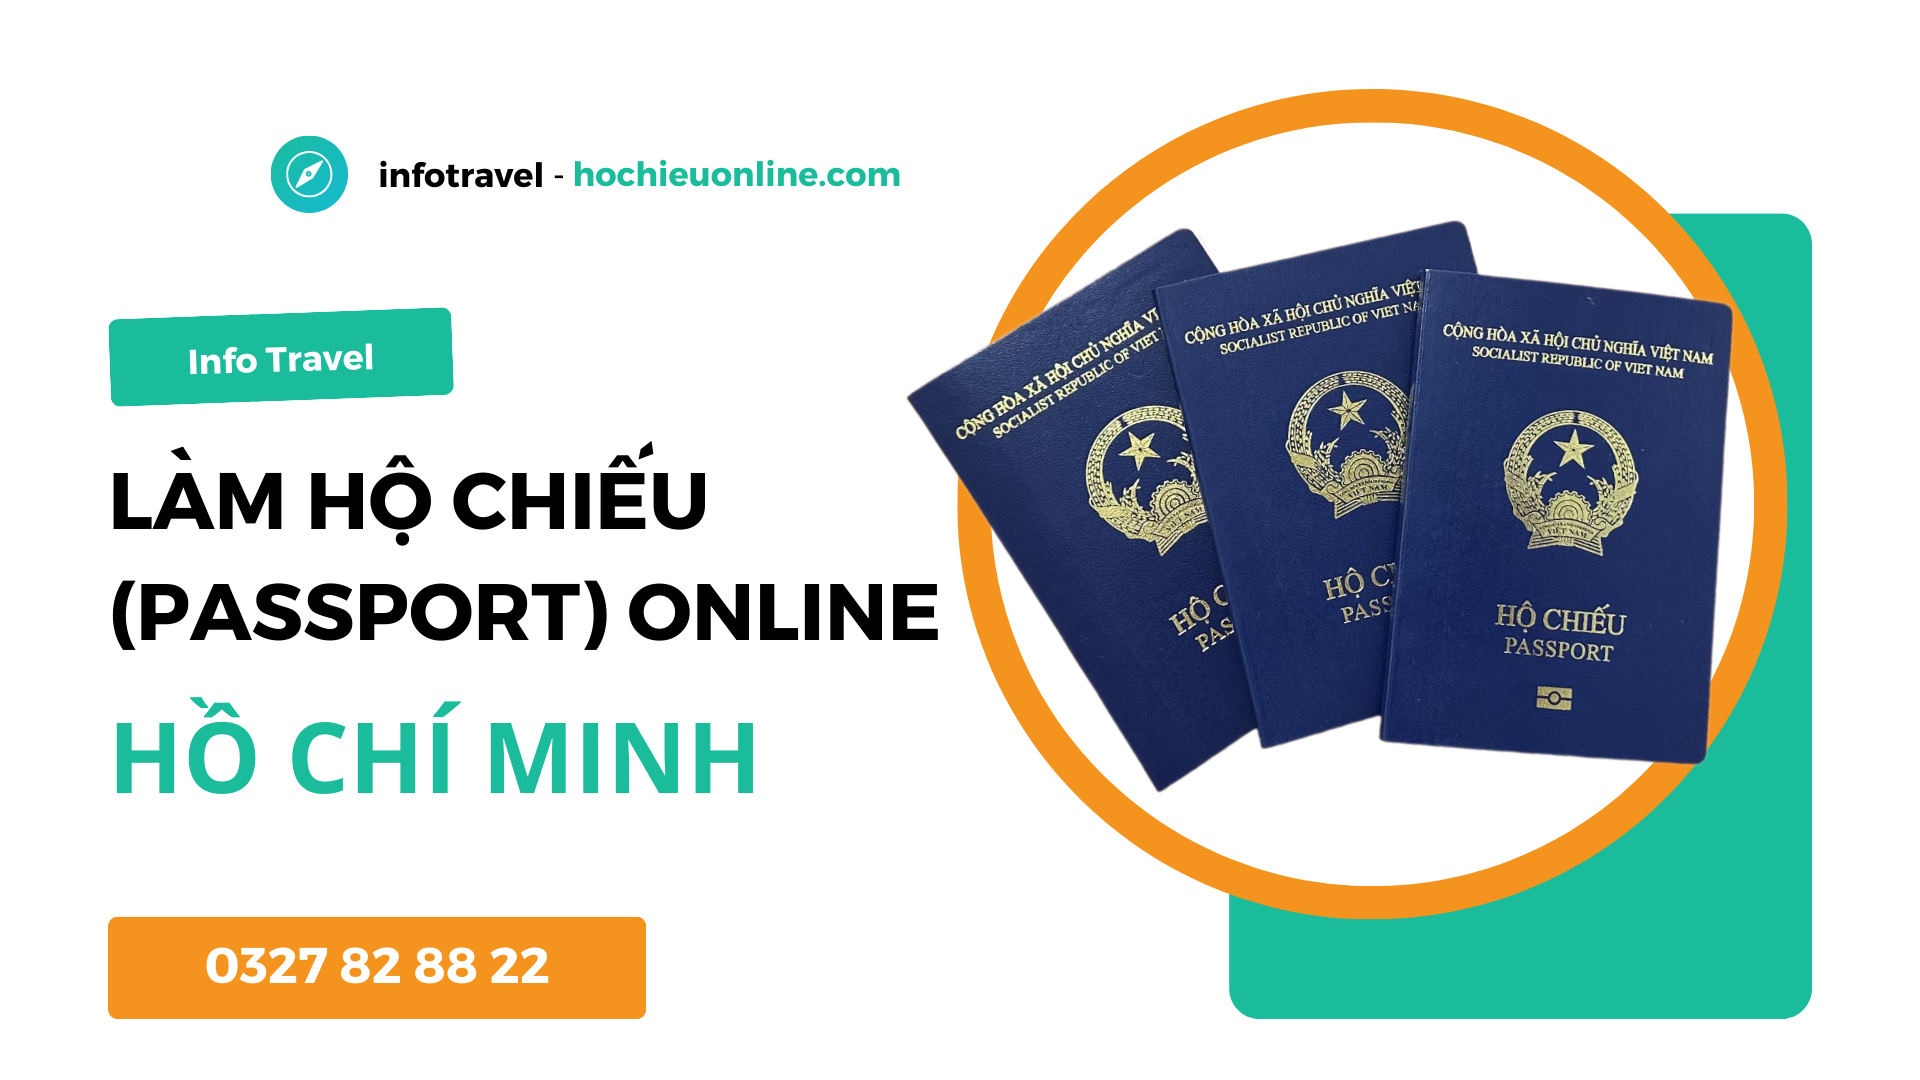 Làm hộ chiếu passport online tại thành phố Hồ Chí Minh